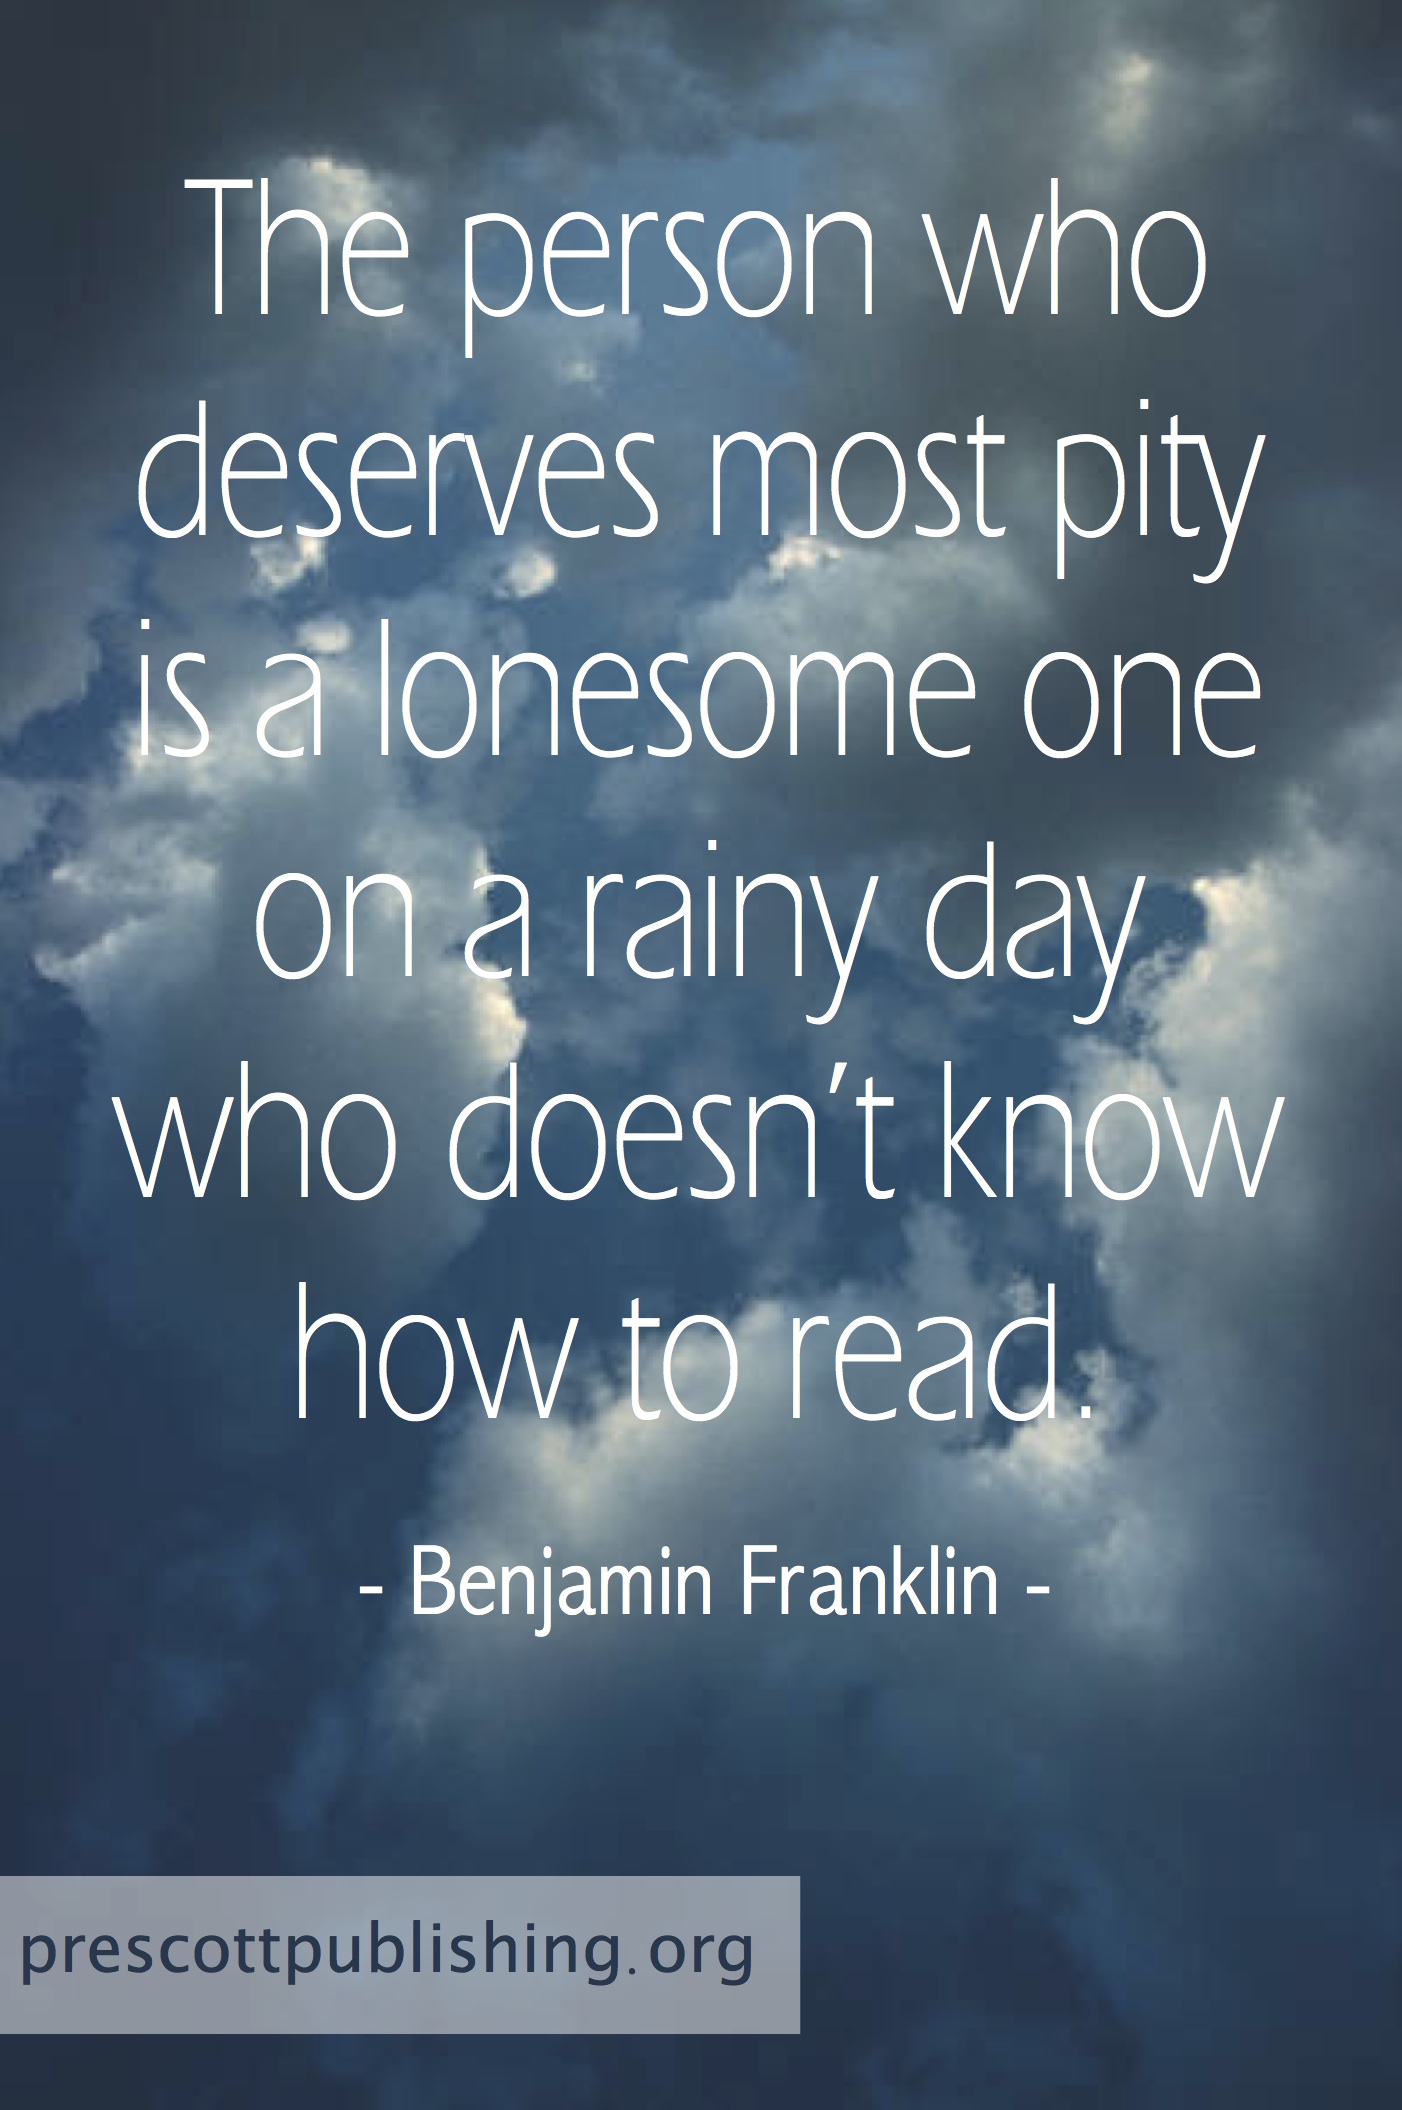 Reading Away on a Rainy Day